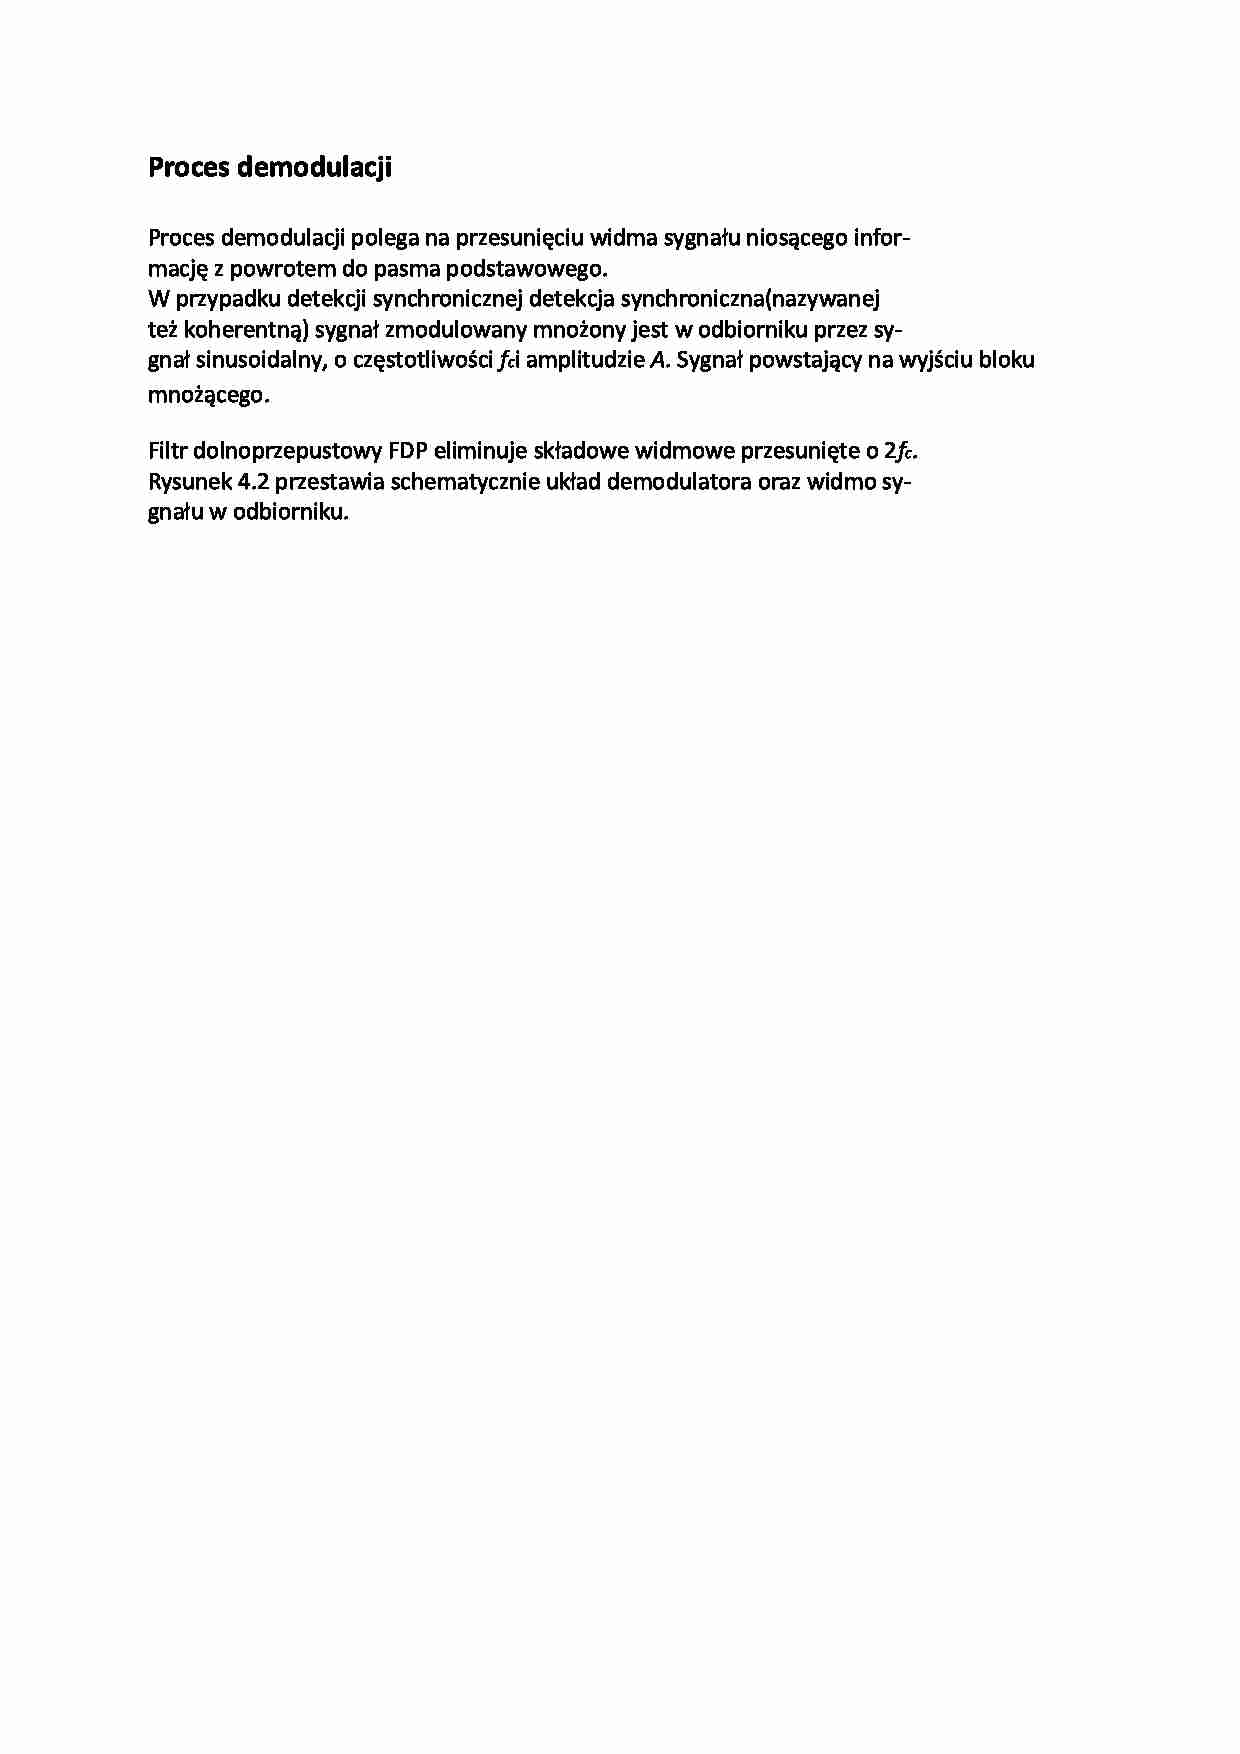 Proces demodulacji - opracowanie - strona 1